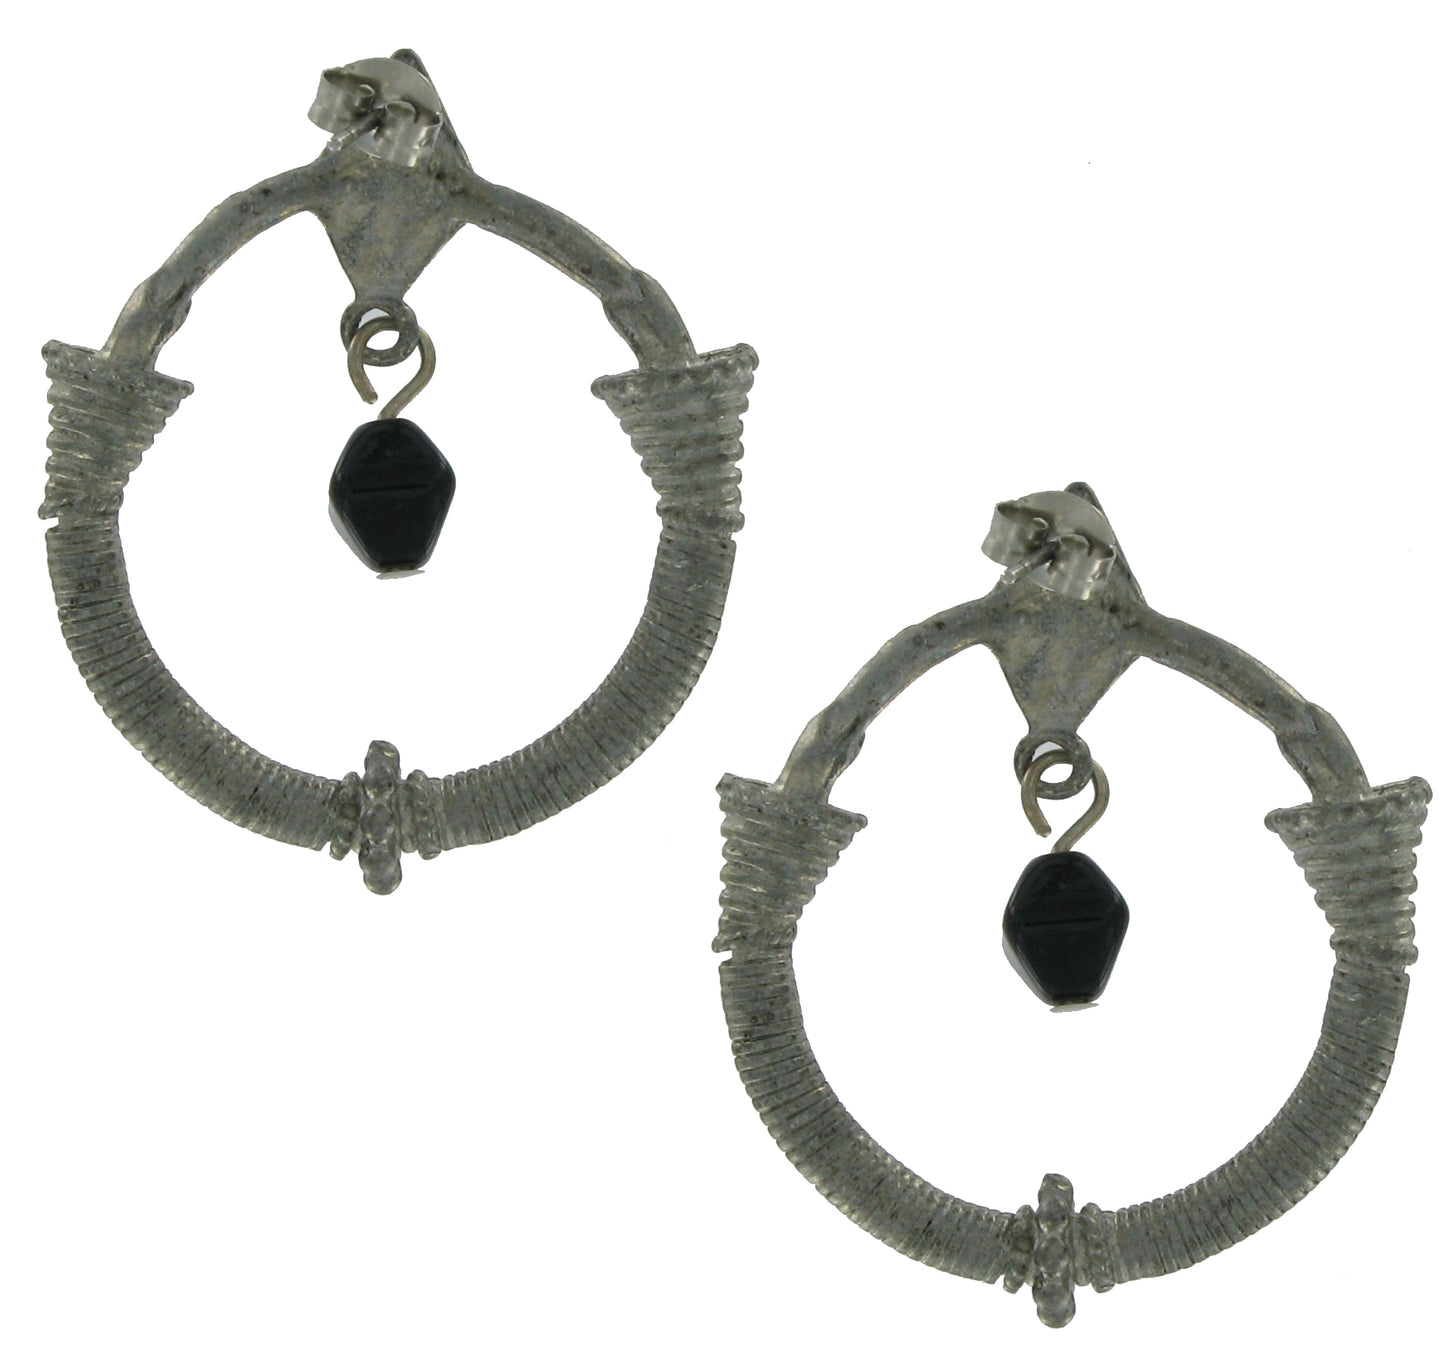 Primitive Unique Hoop Earrings Womens Jewelry Pierced 2" Silver Tone Black Bead